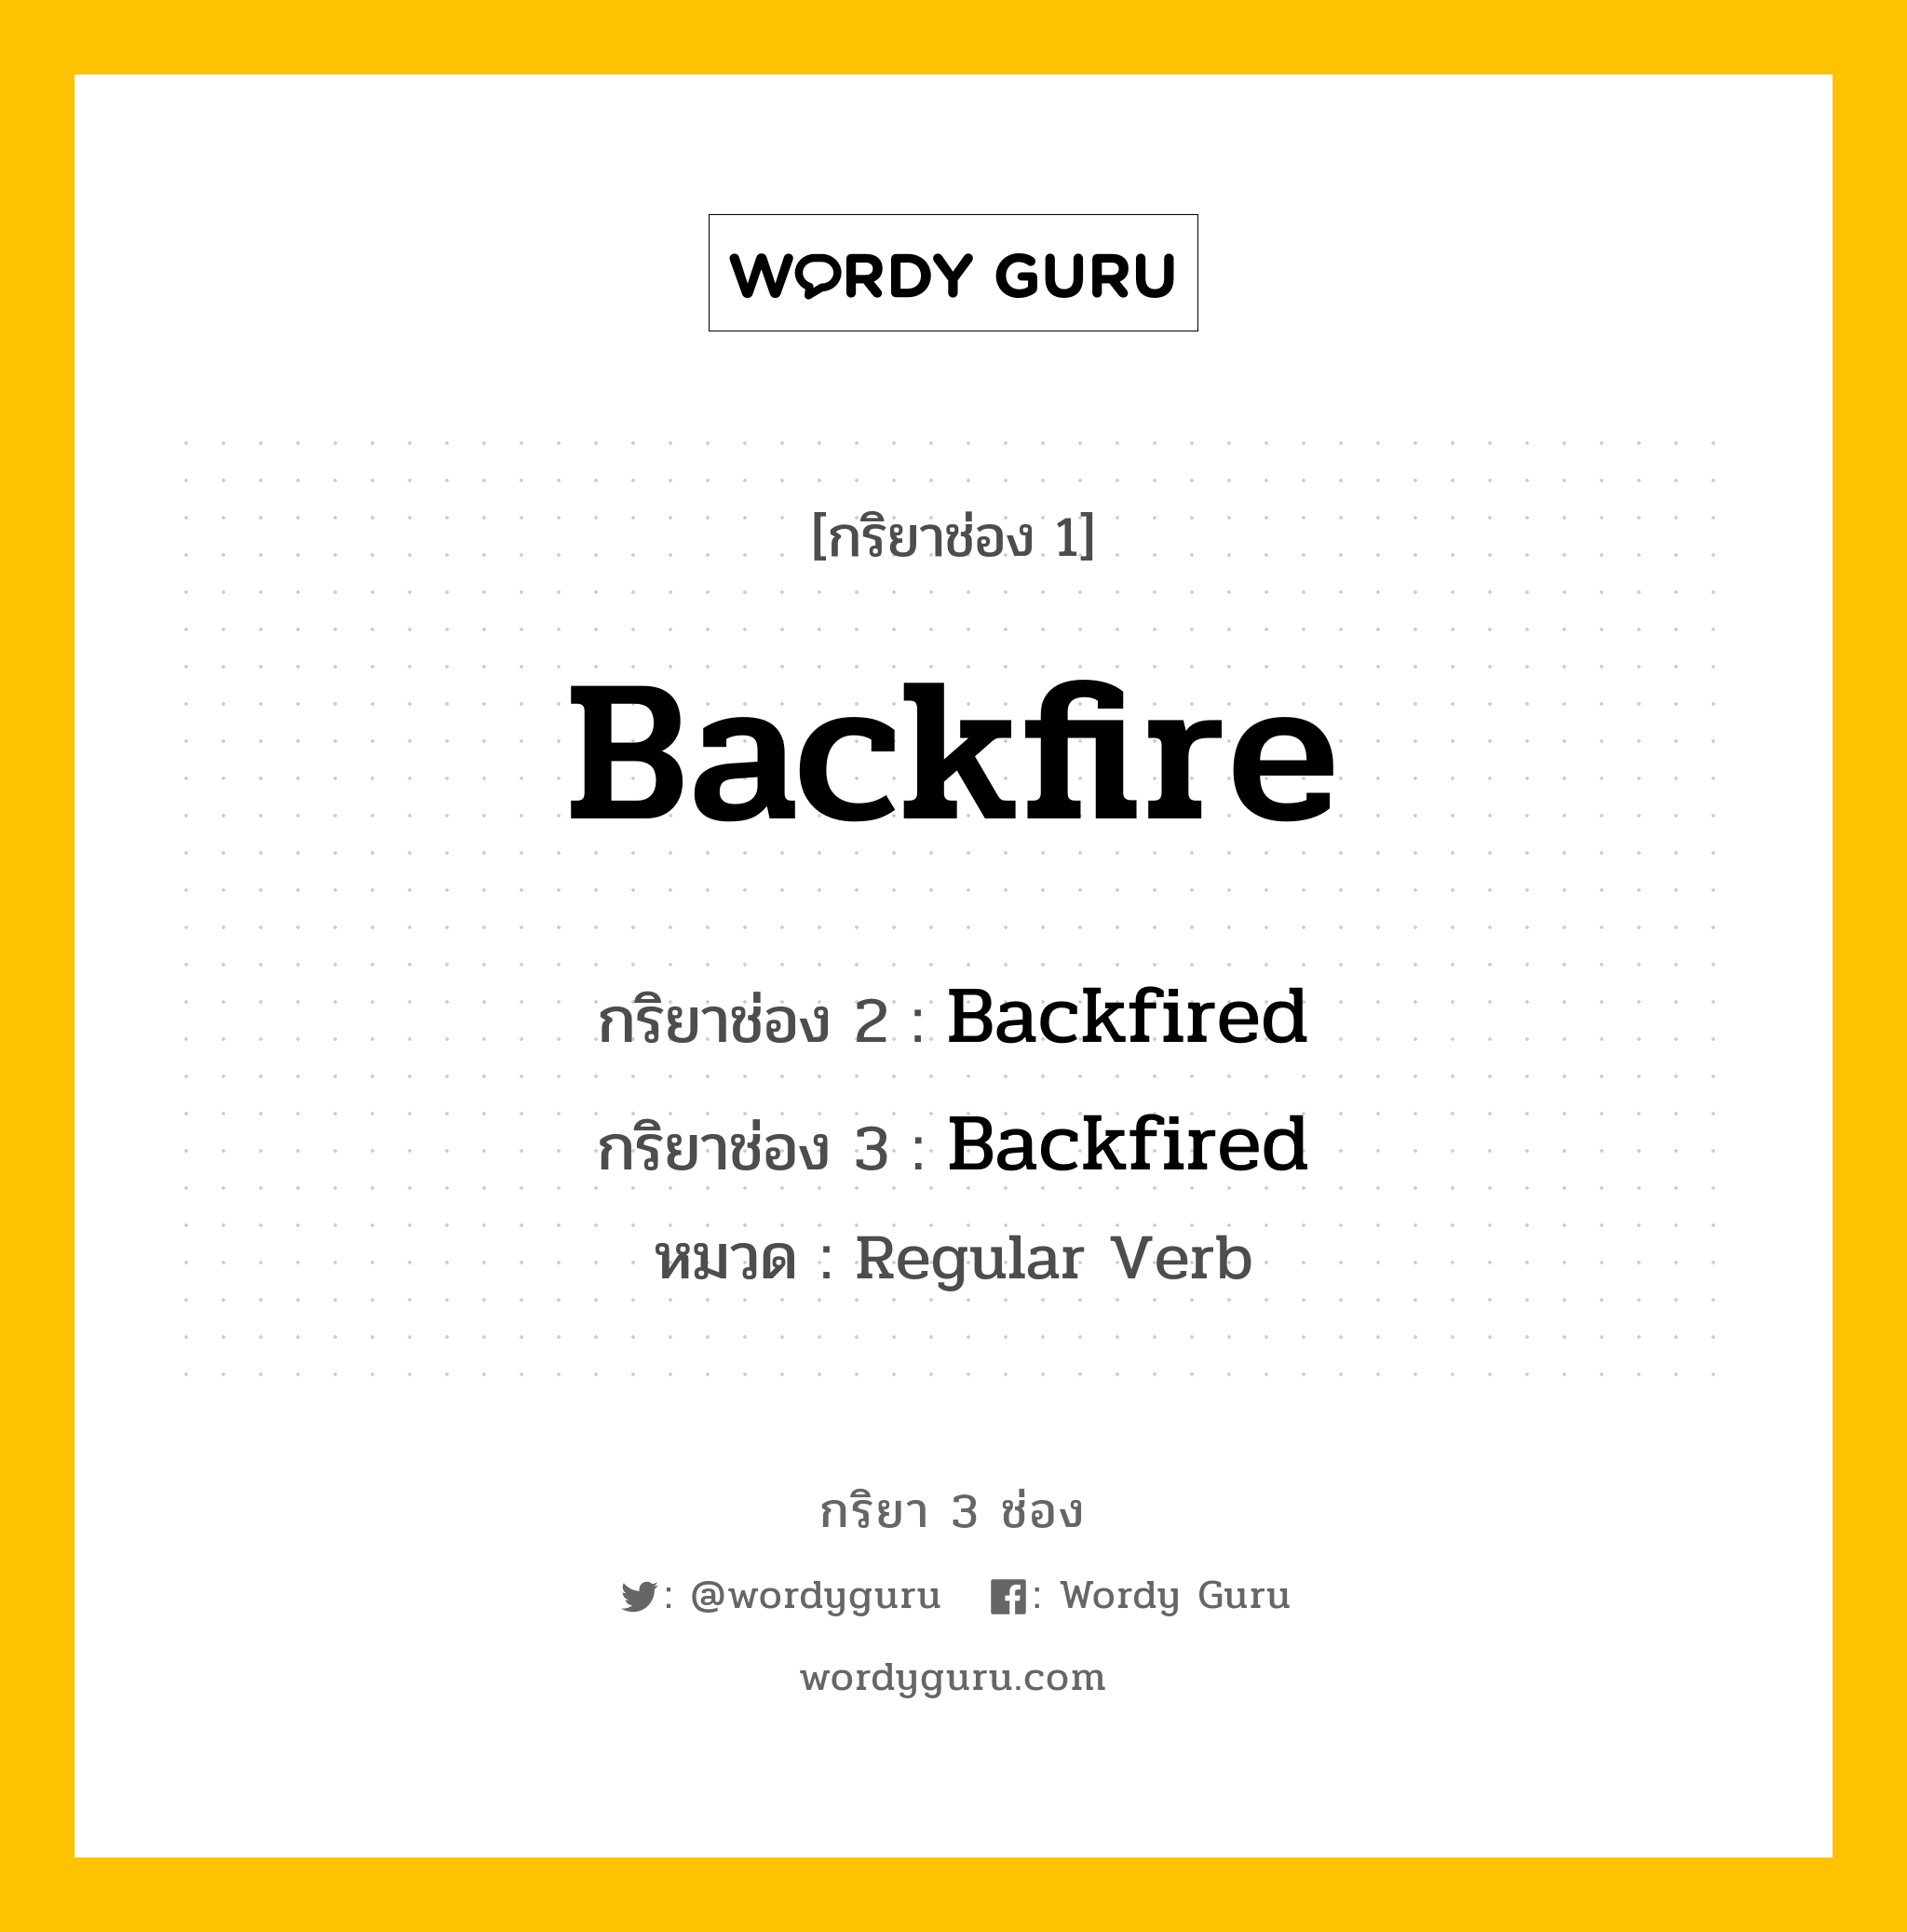 กริยา 3 ช่อง: Backfire ช่อง 2 Backfire ช่อง 3 คืออะไร, กริยาช่อง 1 Backfire กริยาช่อง 2 Backfired กริยาช่อง 3 Backfired หมวด Regular Verb หมวด Regular Verb